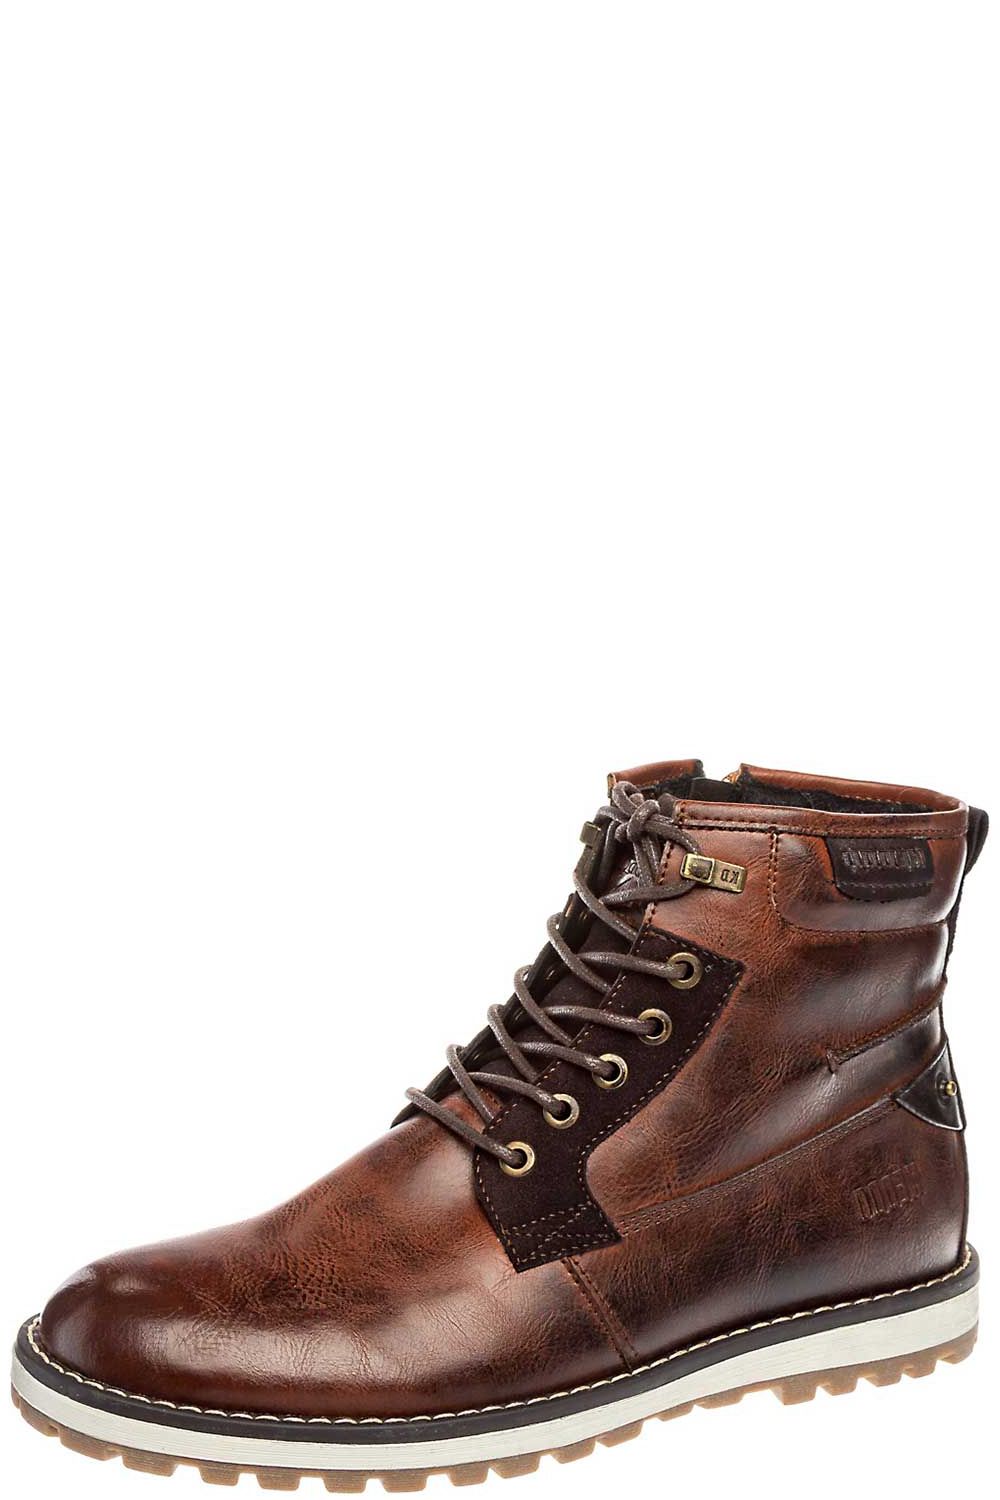 Ботинки Keddo, размер 39, цвет коричневый - фото 1